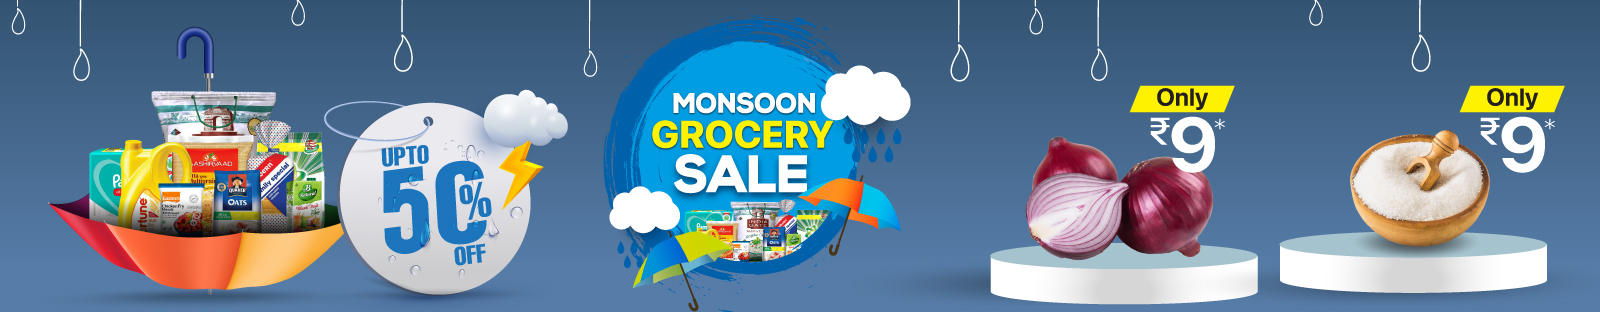 monsoon-Grocery-Sale-Onion.jpg